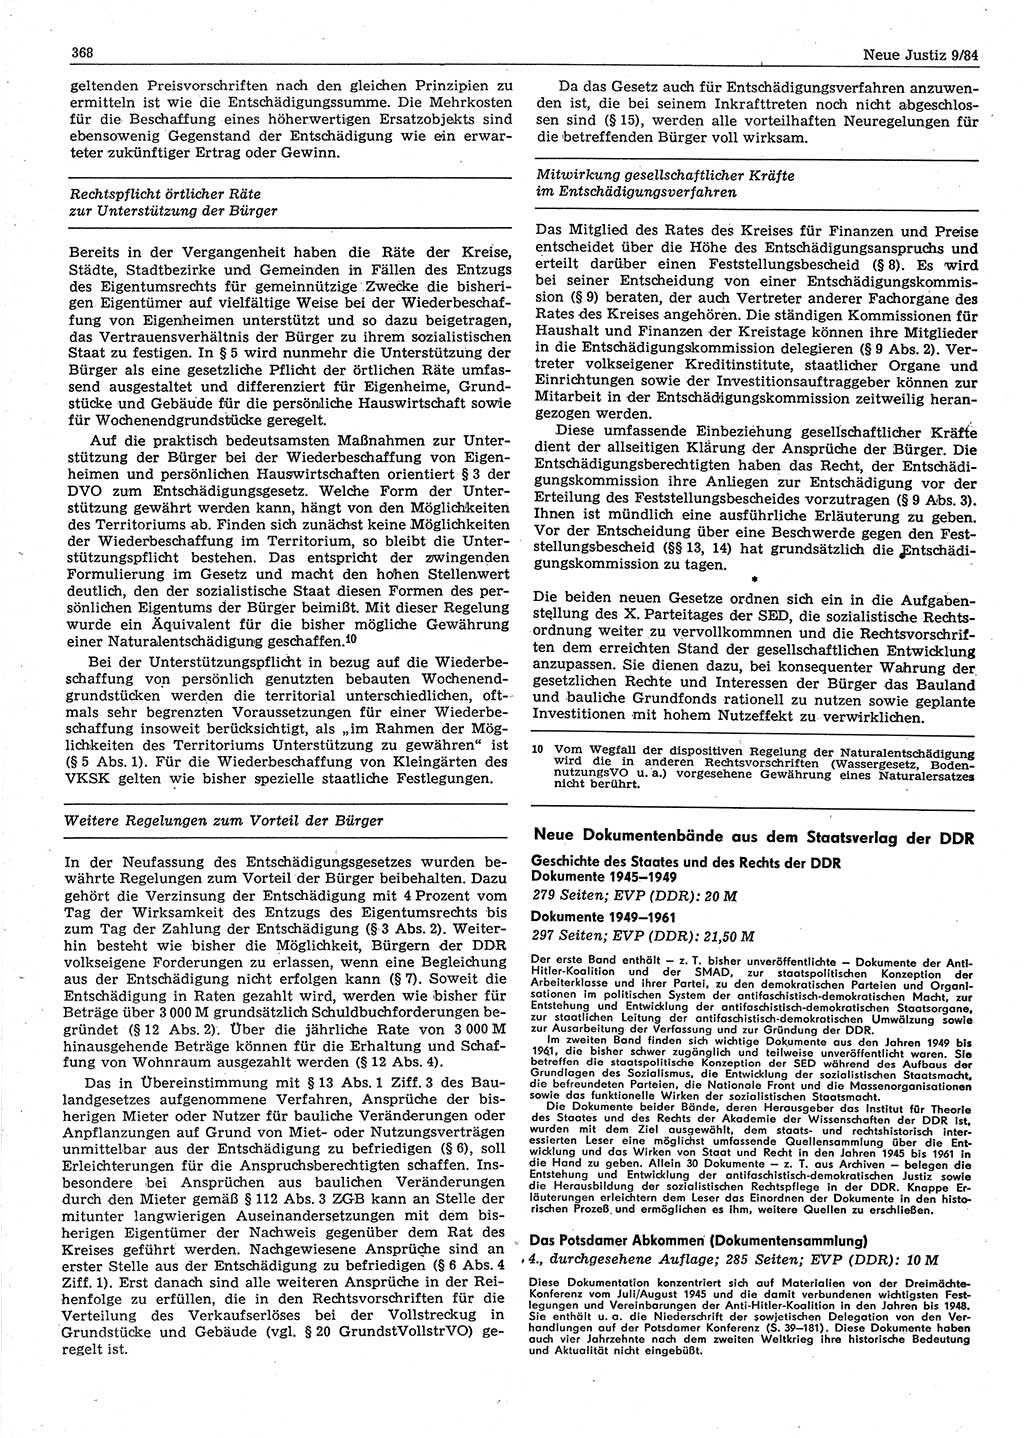 Neue Justiz (NJ), Zeitschrift für sozialistisches Recht und Gesetzlichkeit [Deutsche Demokratische Republik (DDR)], 38. Jahrgang 1984, Seite 368 (NJ DDR 1984, S. 368)